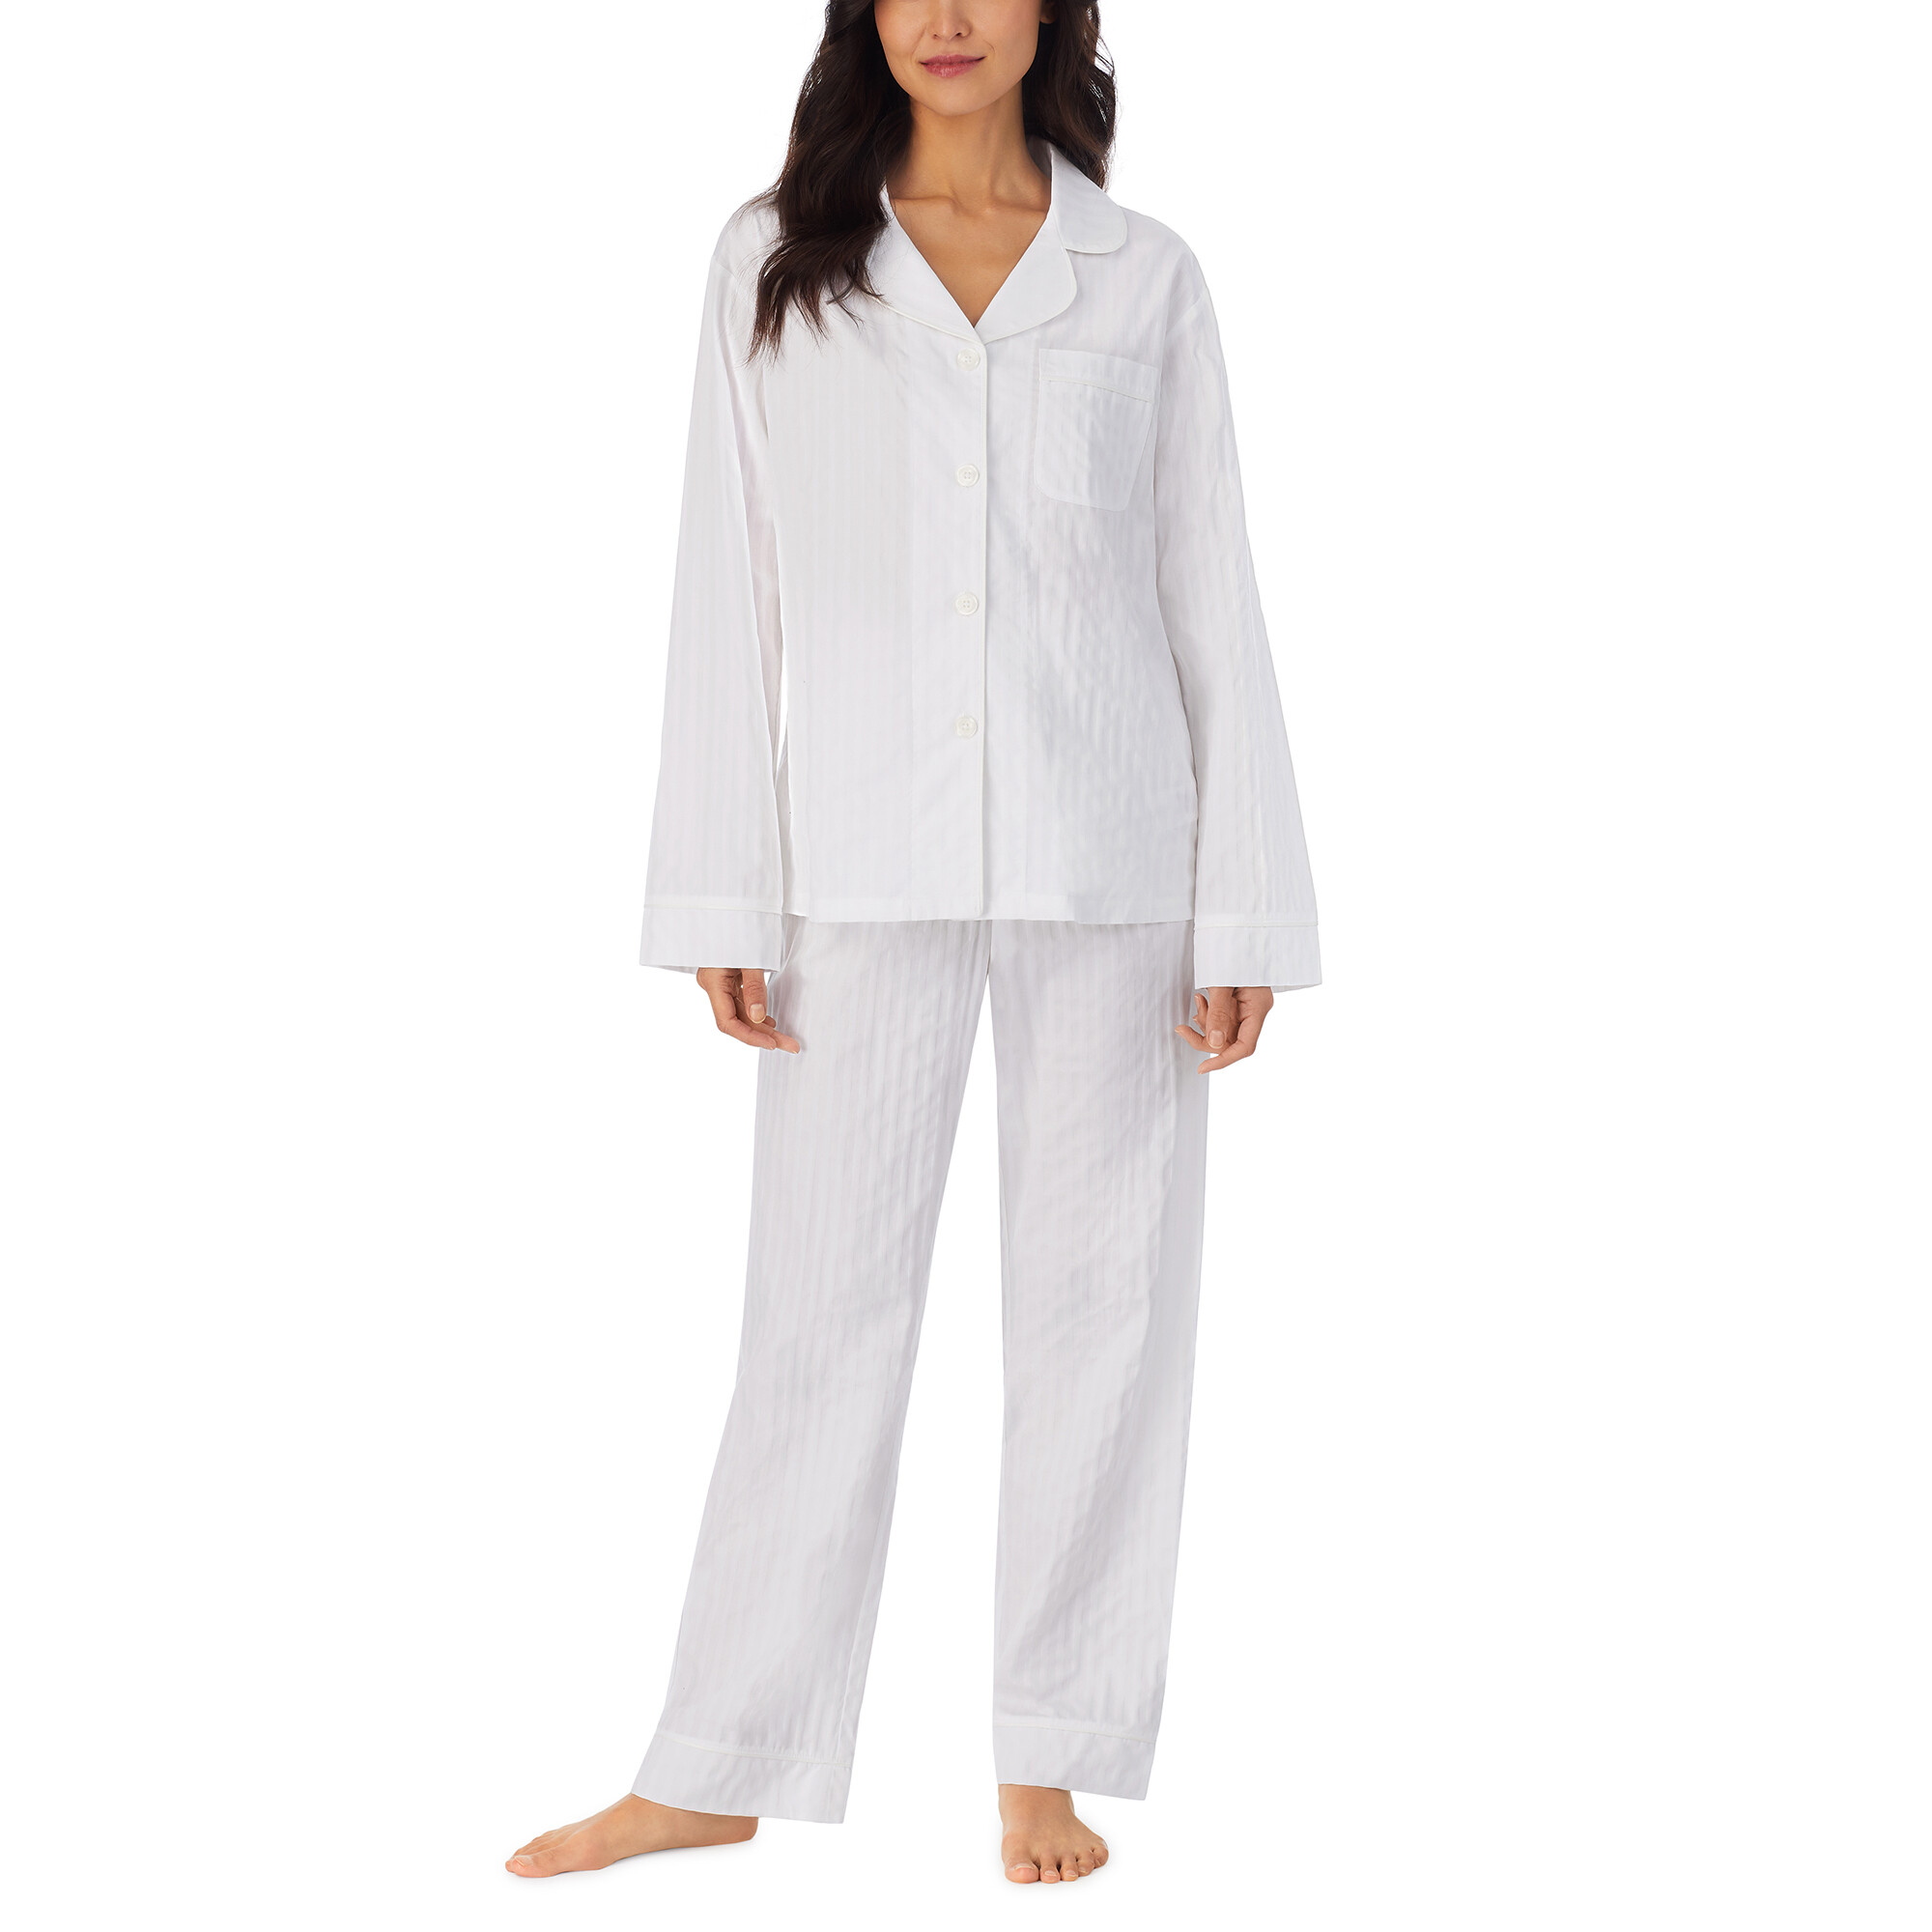 Imbracaminte Femei BedHead Pajamas Long Sleeve Classic Pajama Set White 3-D